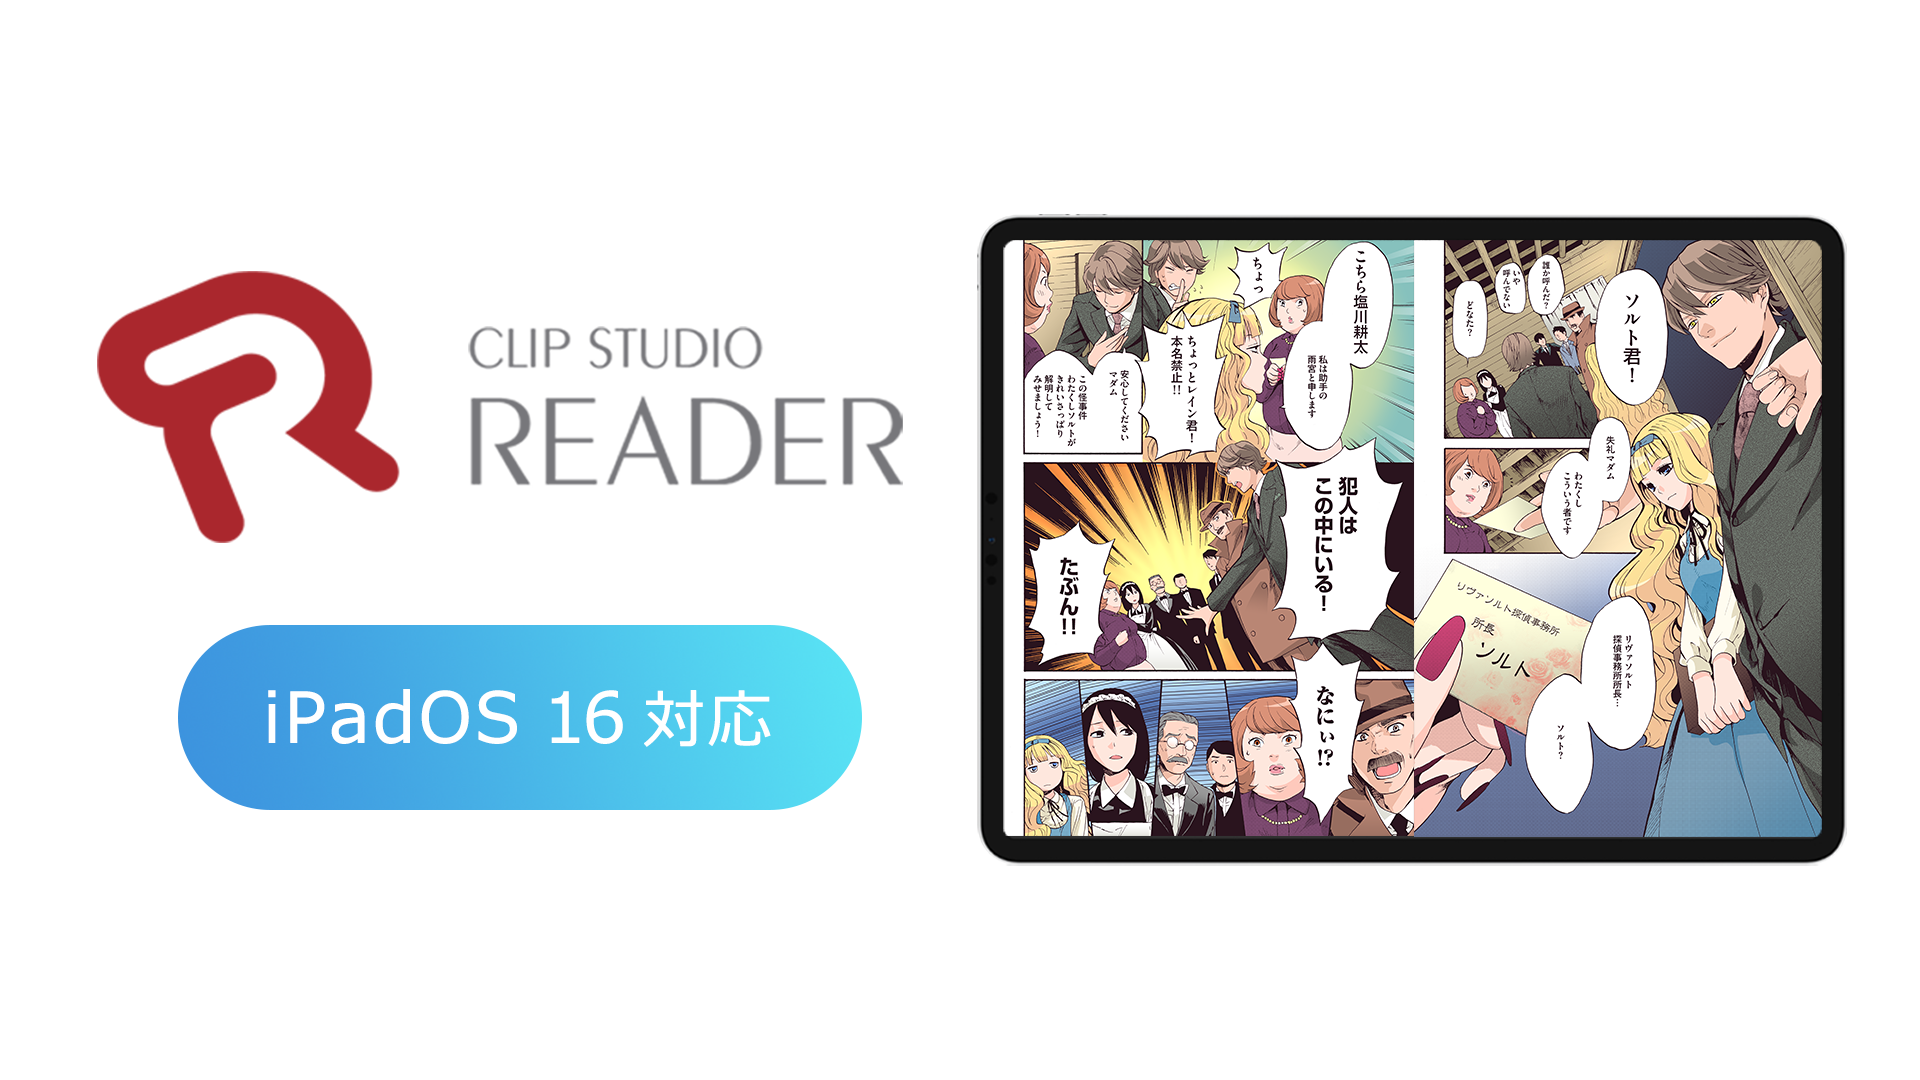 セルシスの電子書籍ビューア「CLIP STUDIO READER」がiPadOS 16に対応